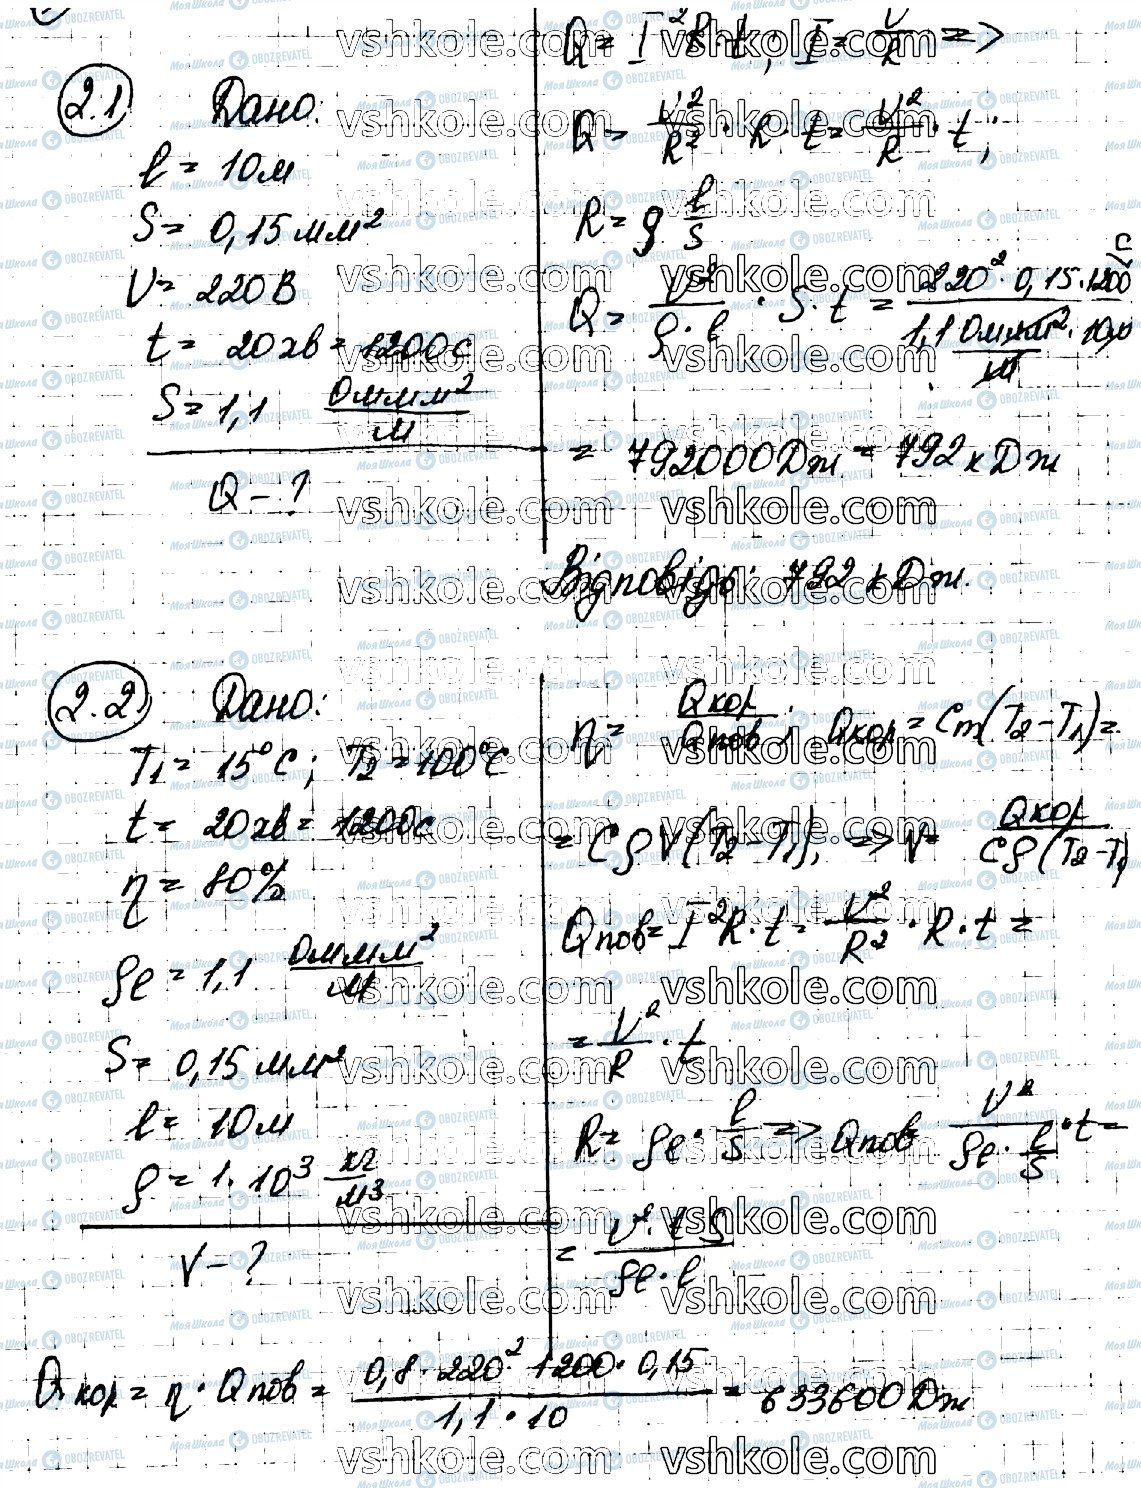 ГДЗ Физика 11 класс страница 2